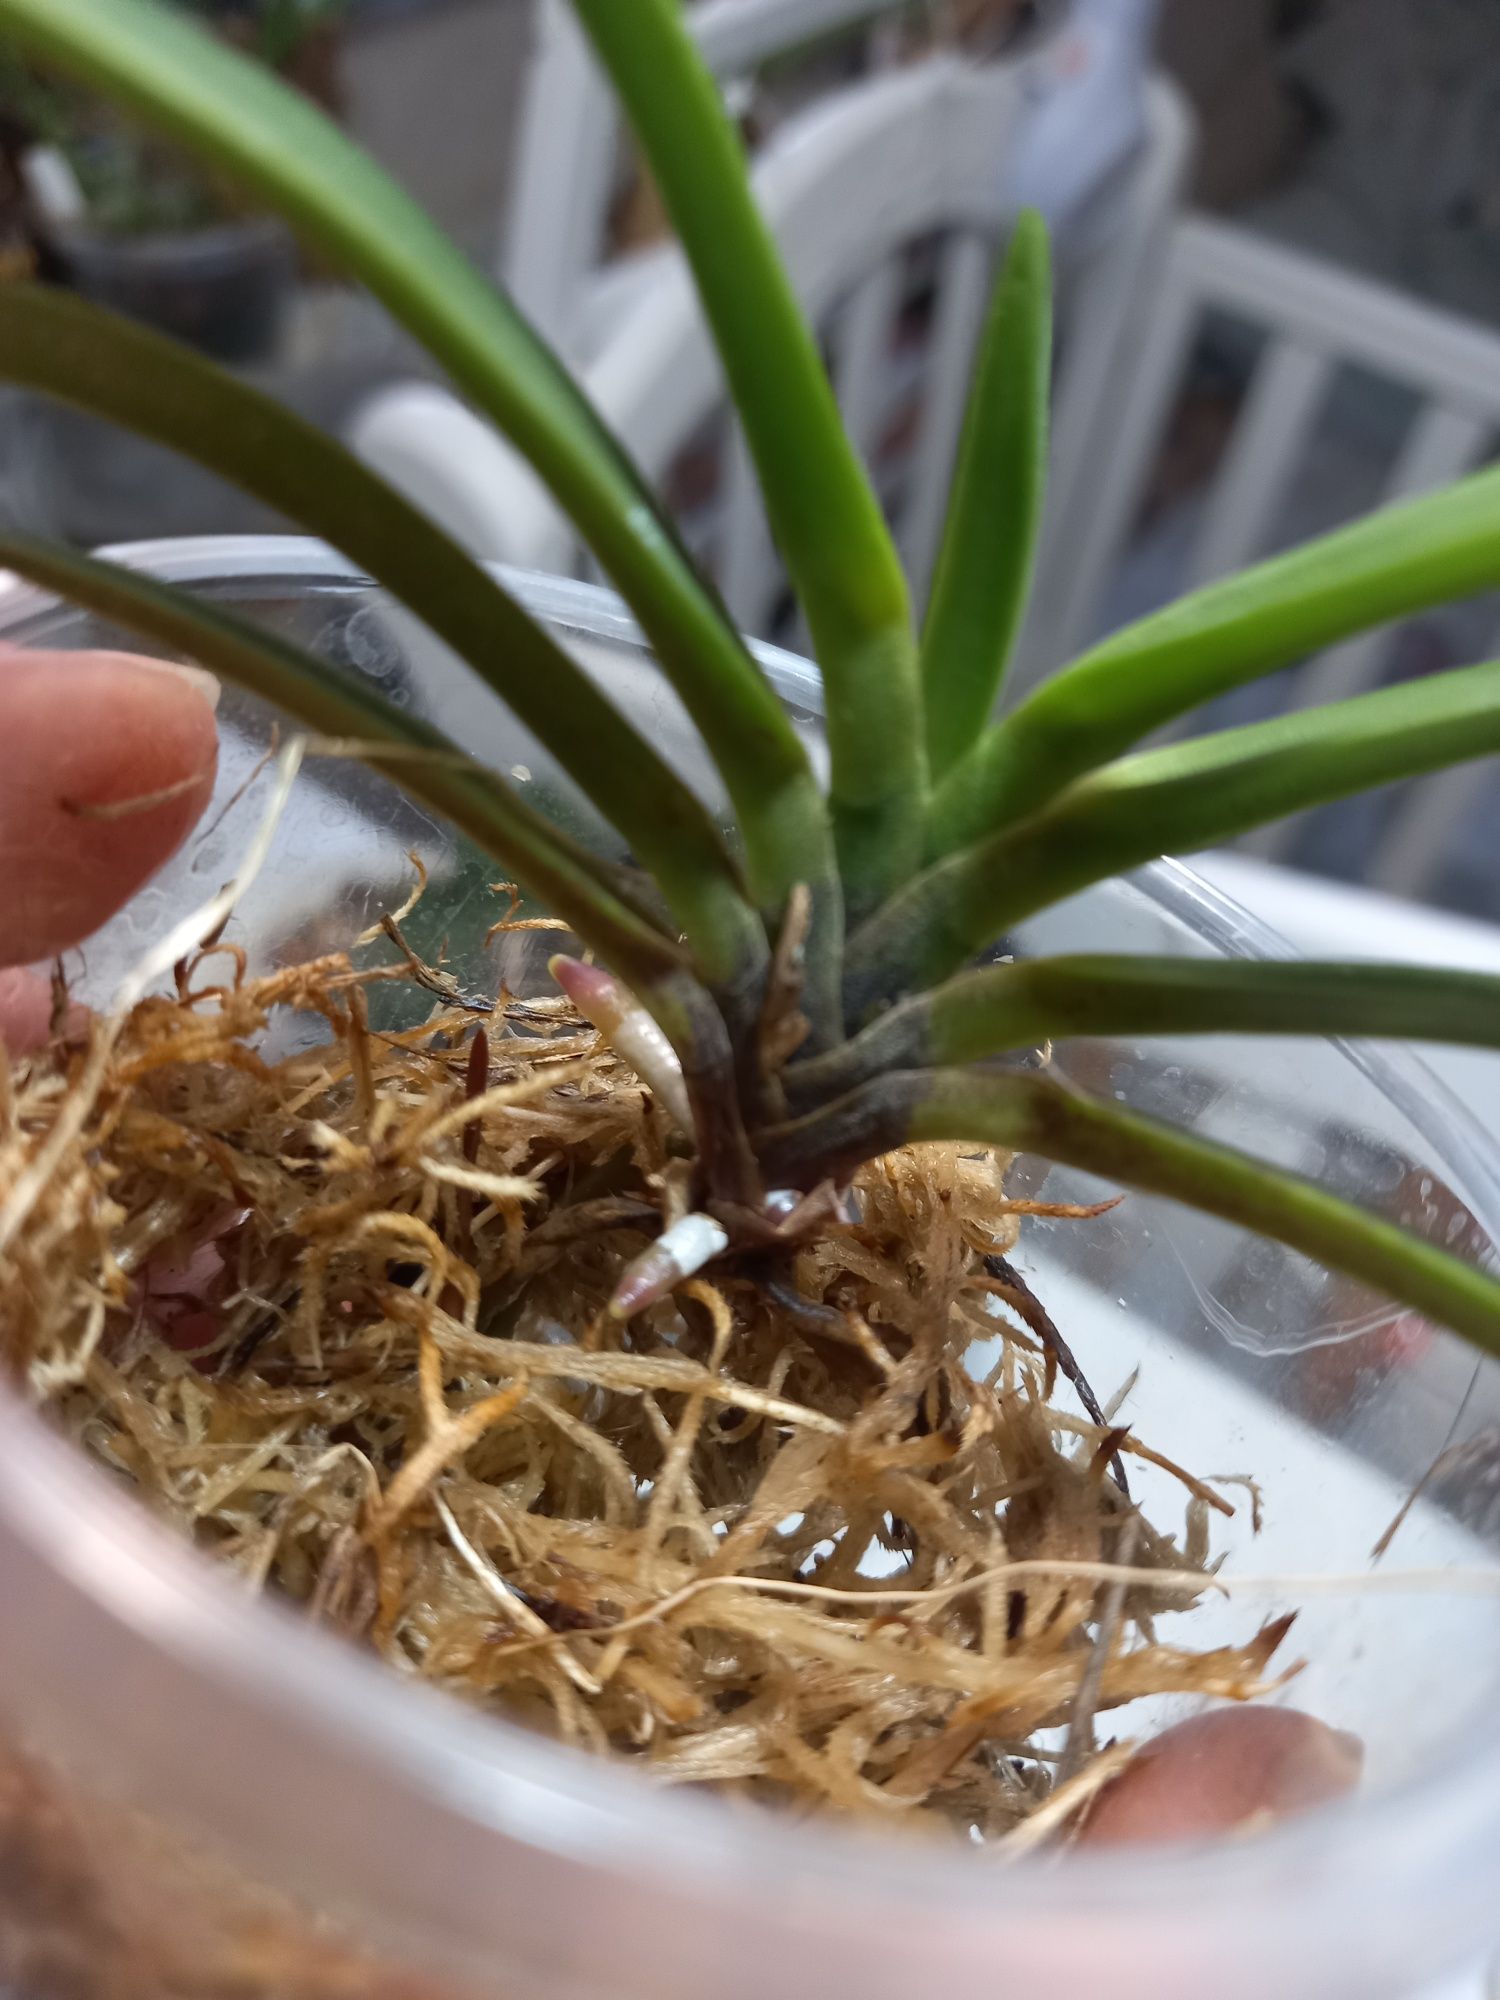 Орхидея неофинетия, мини ванда, Neofinetia falcata